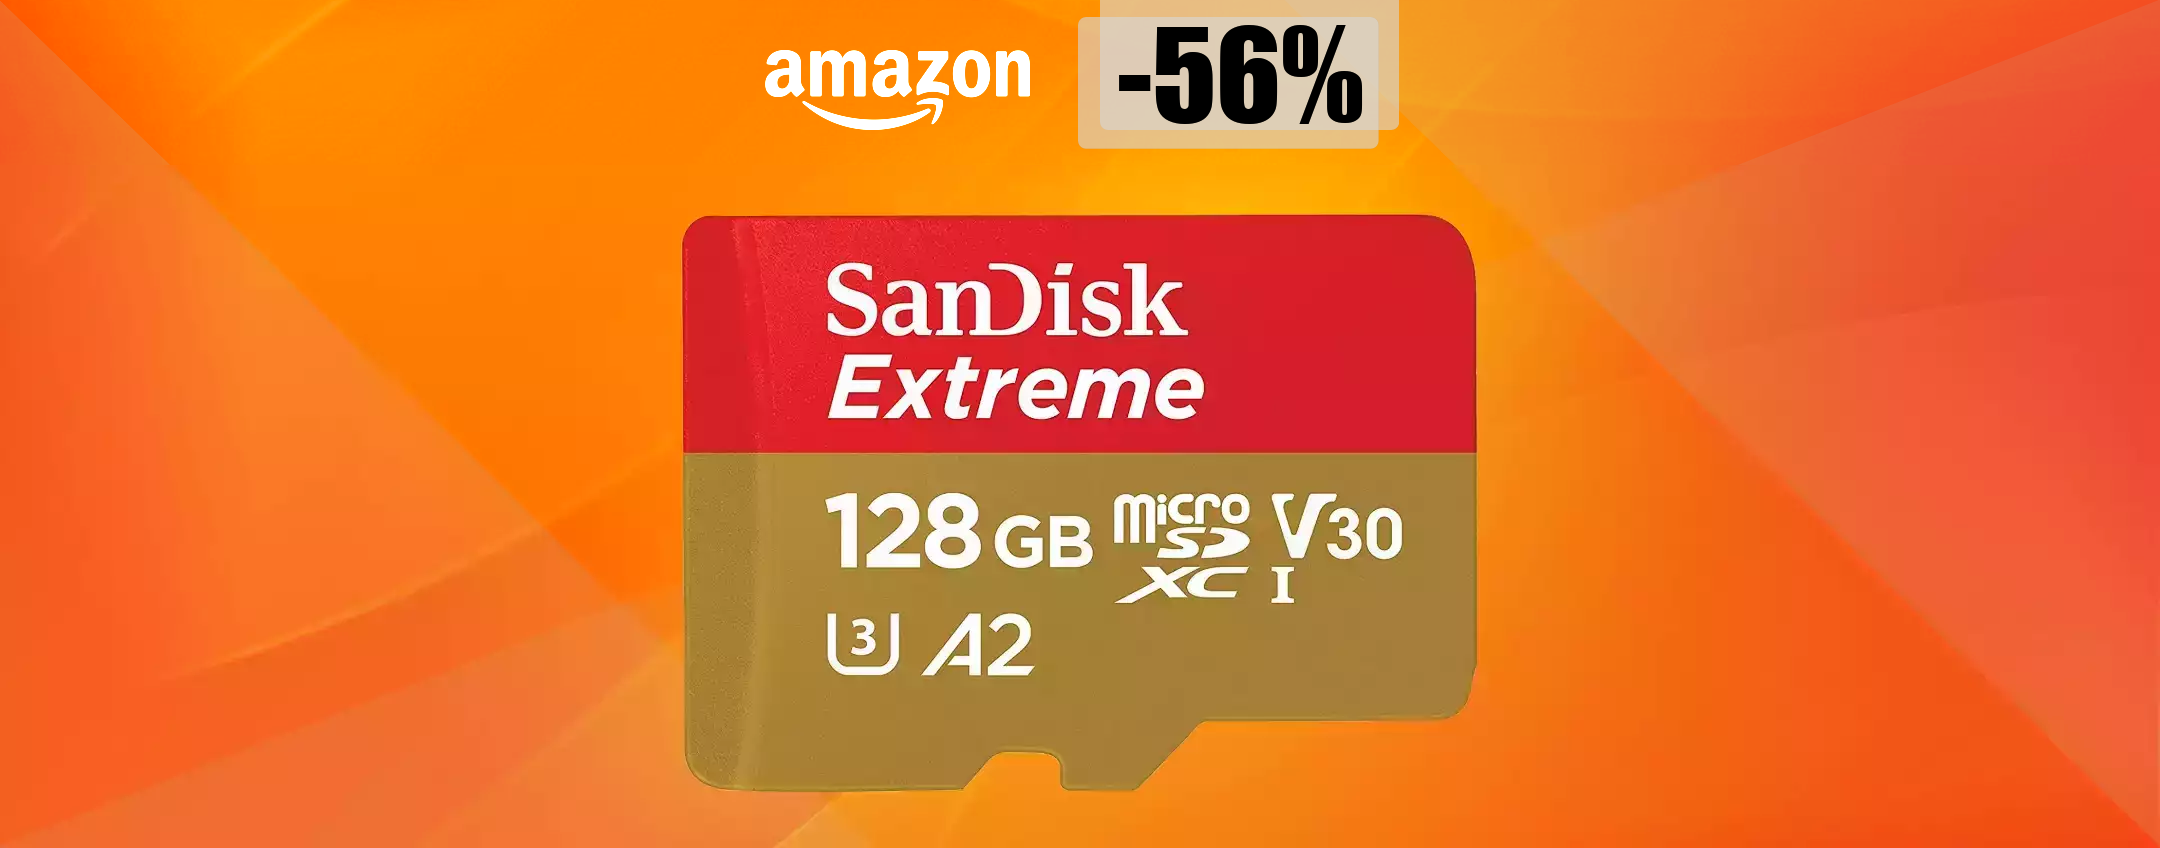 MicroSD 128GB a meno di METÀ PREZZO: non c'è di meglio con 28€